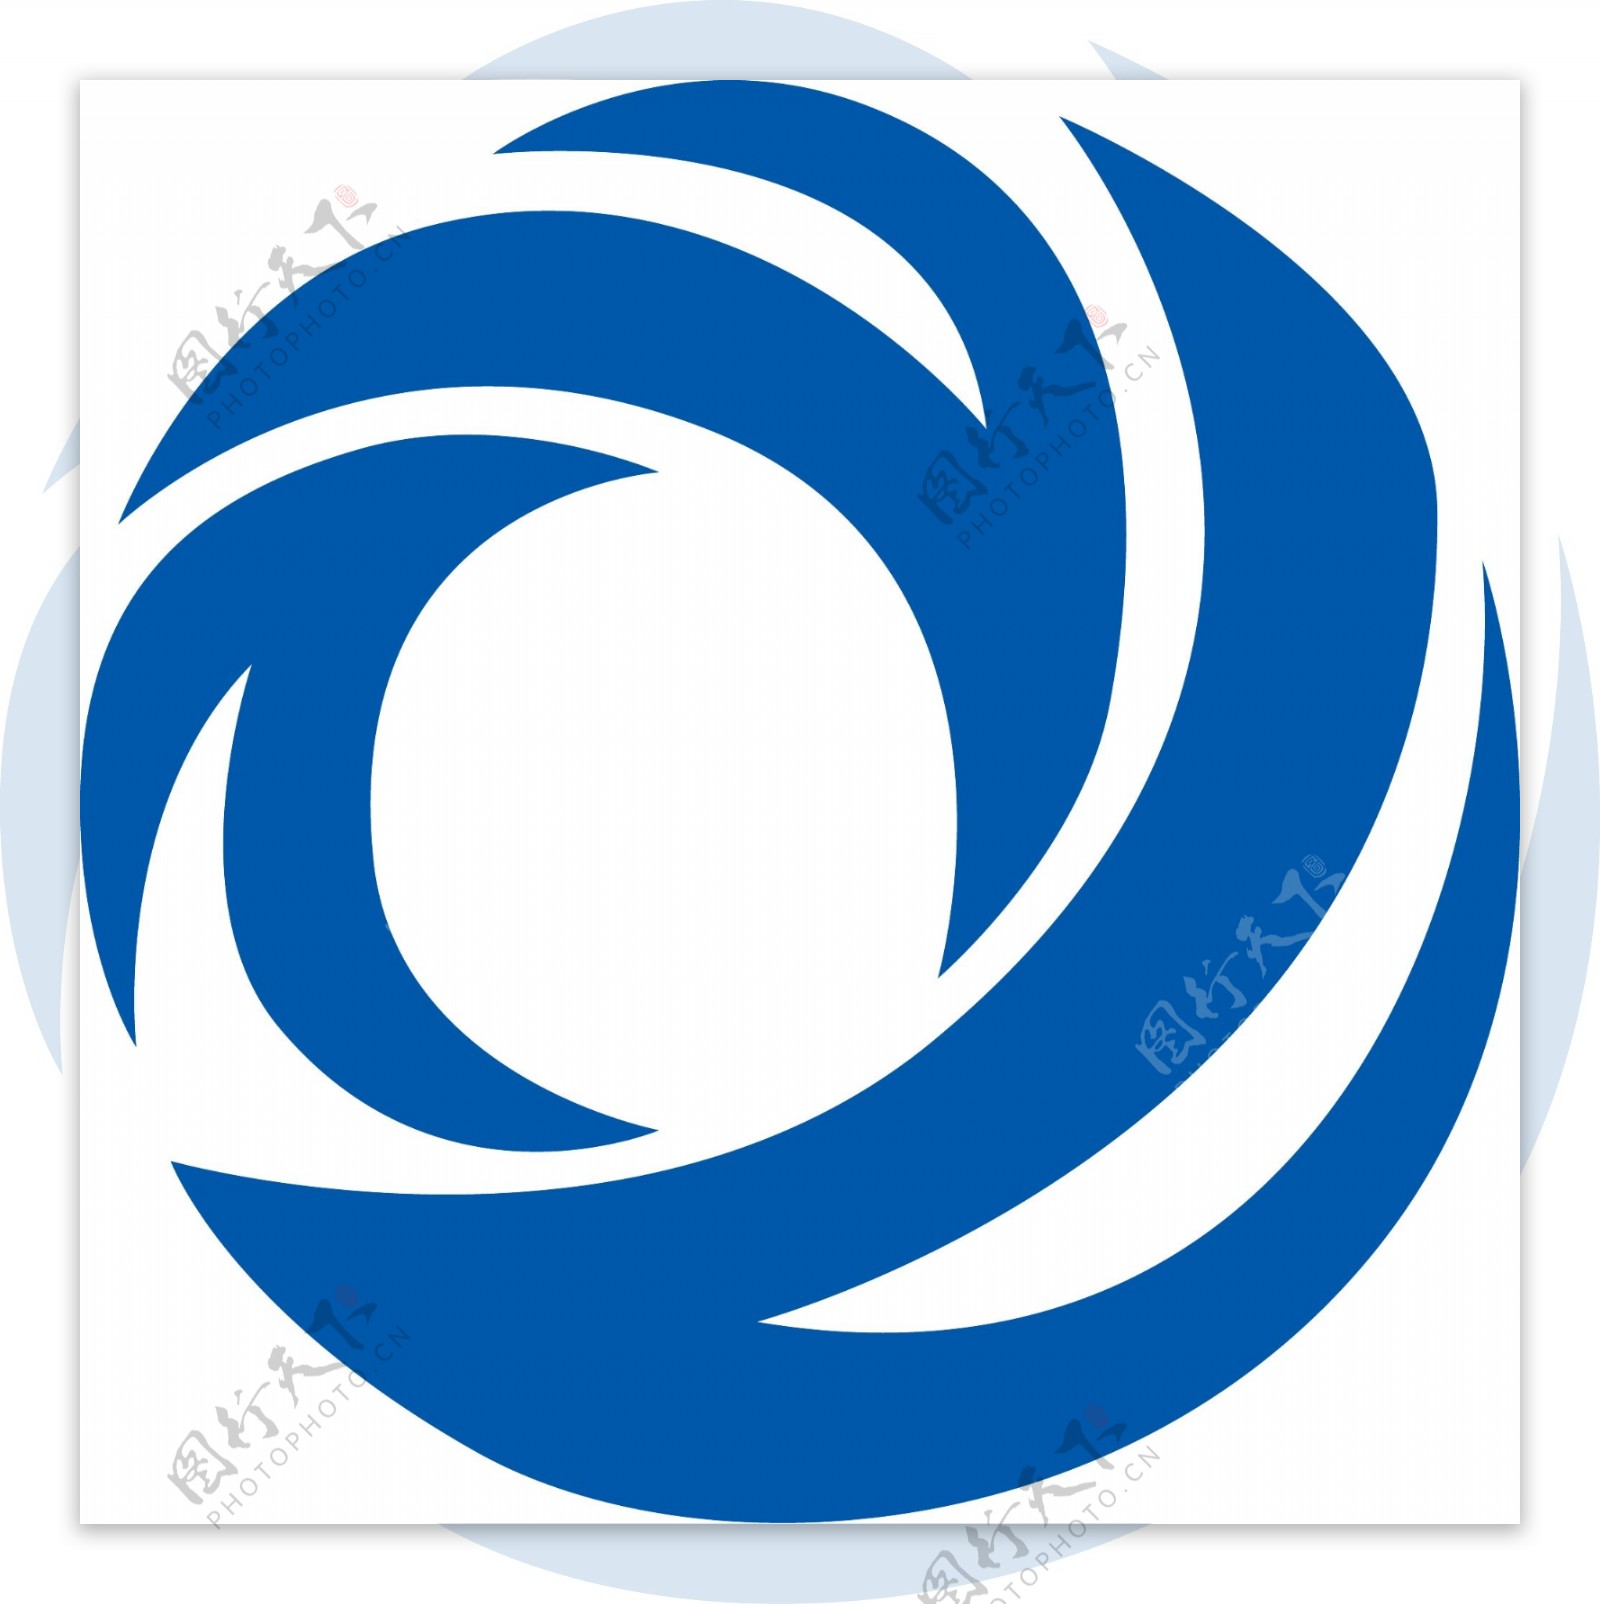 京能集团logo图片